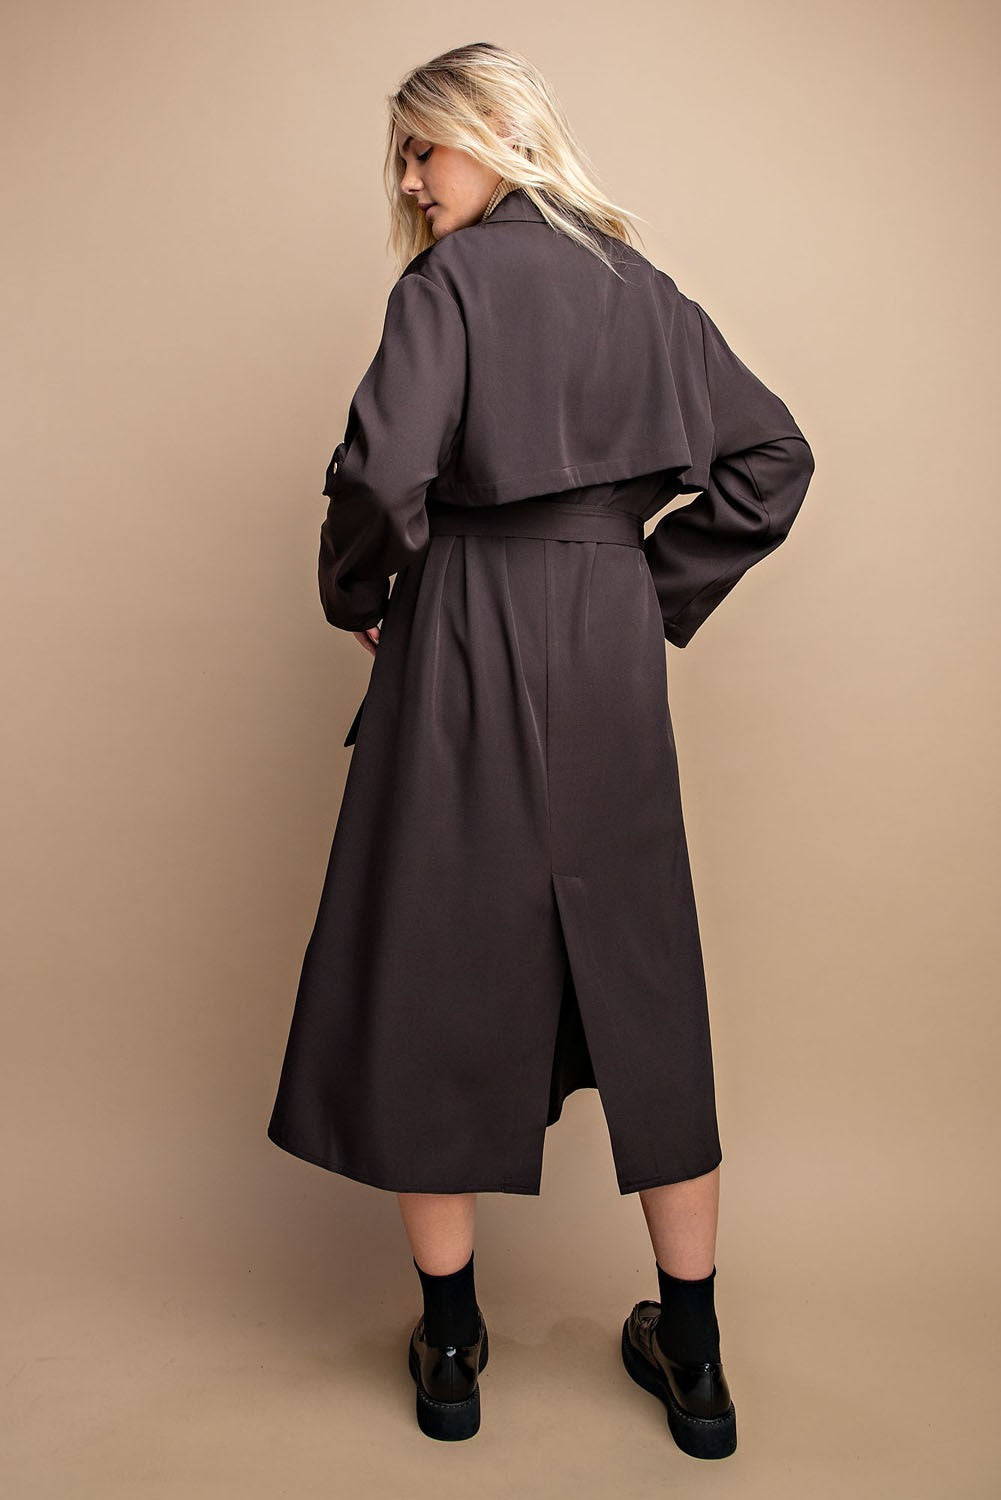 Roll Sleeve Lightweight Coat in Dk. Expresso